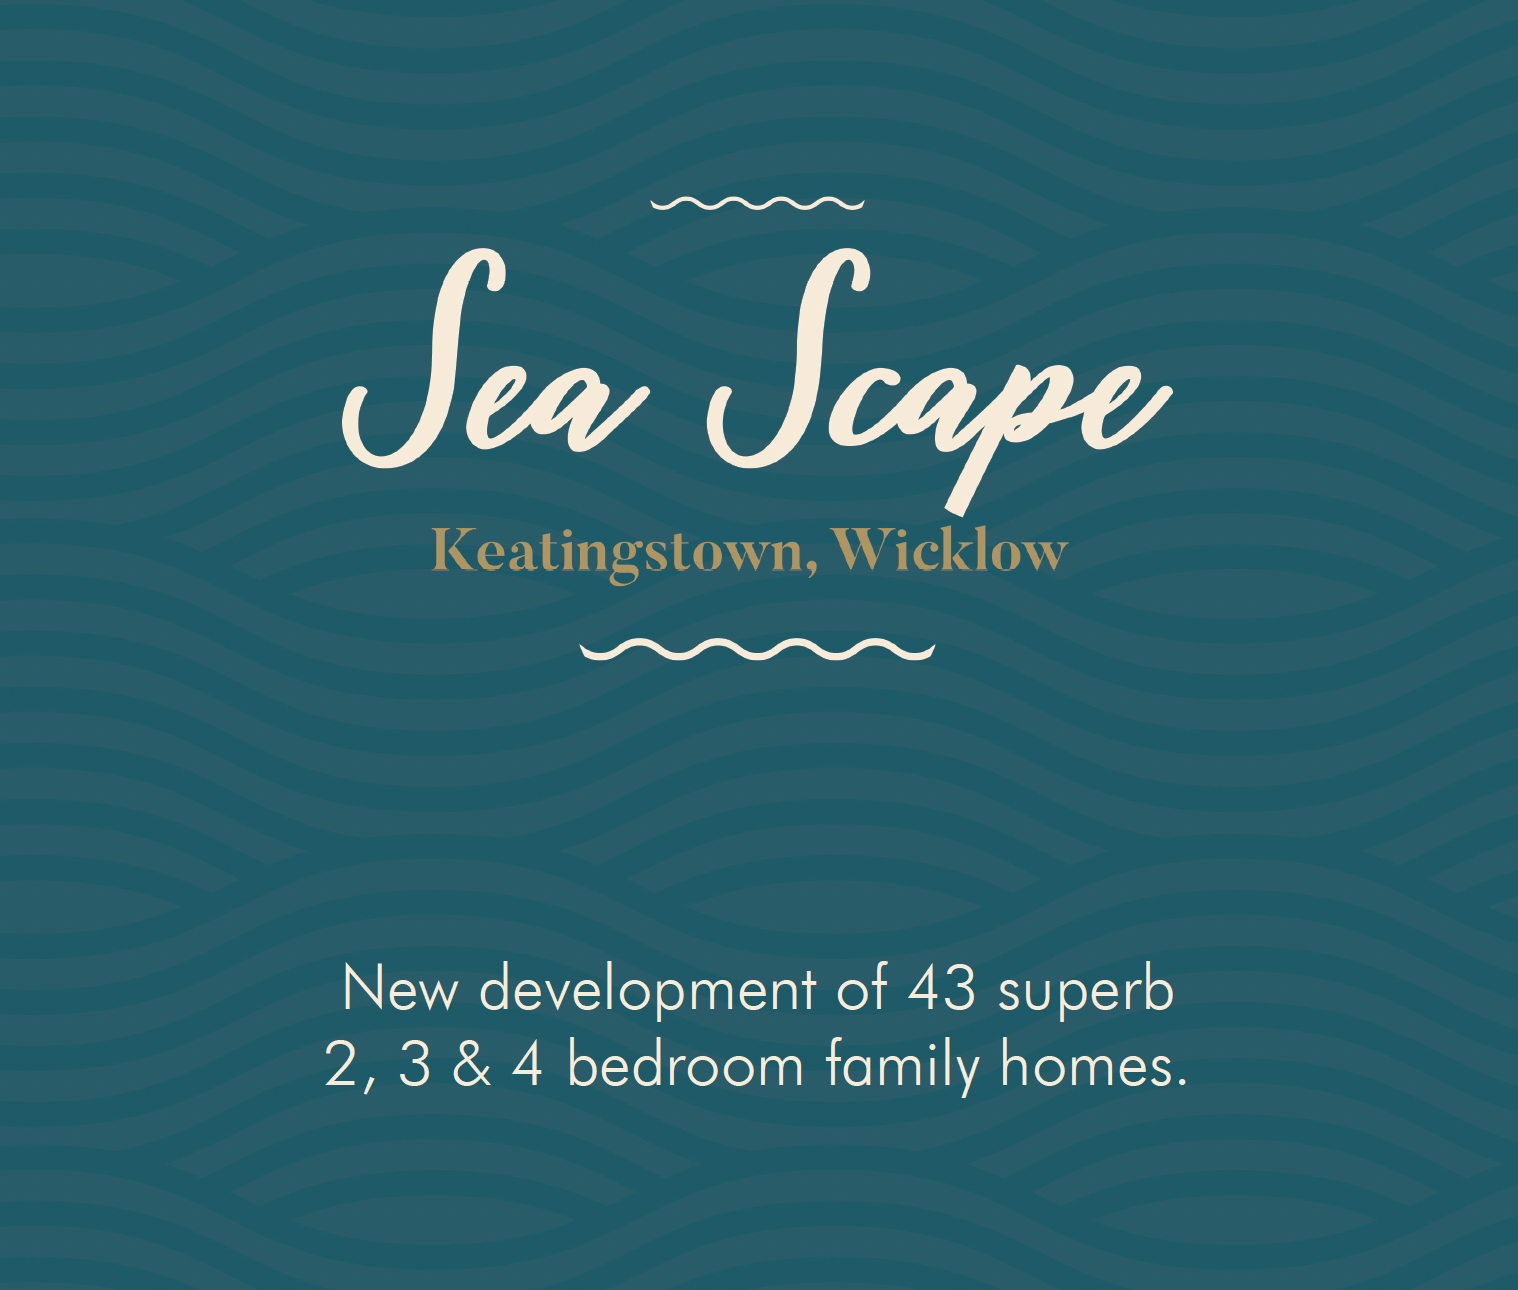 SeaScape